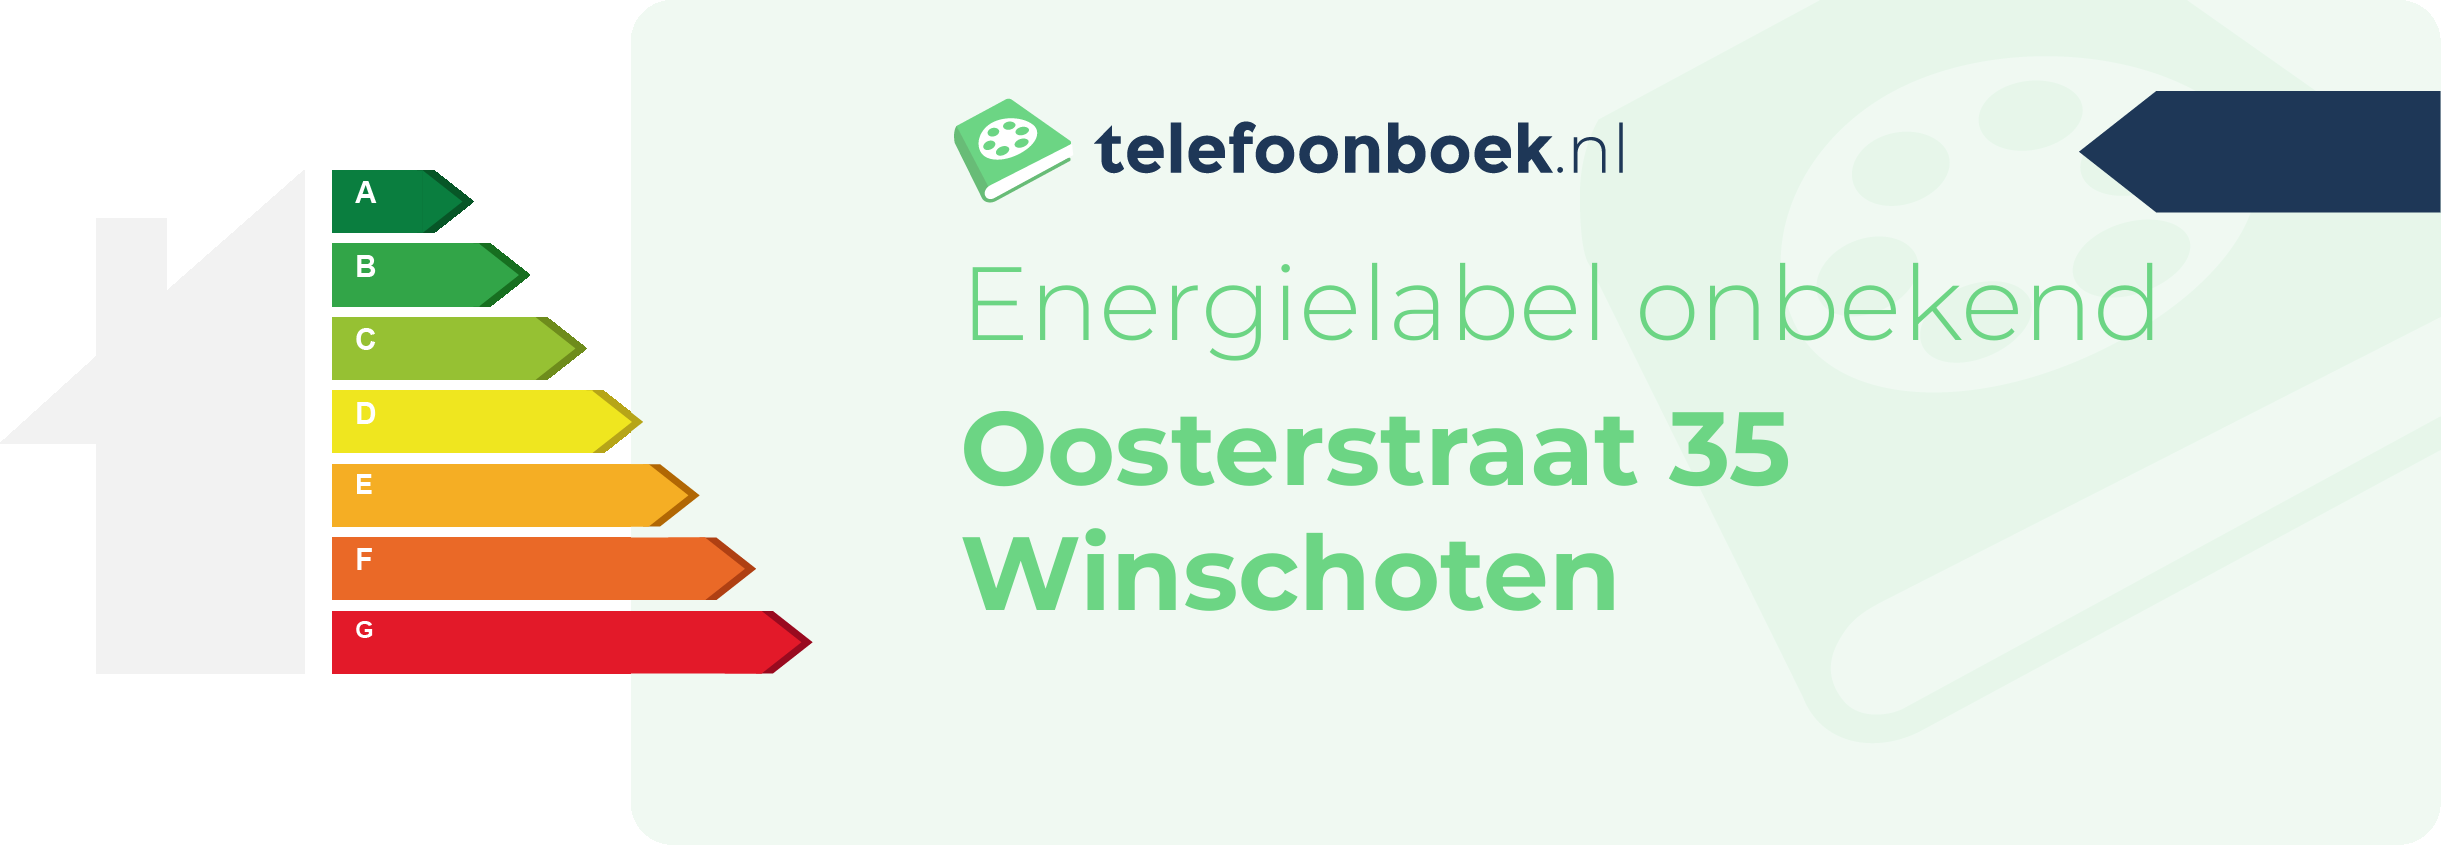 Energielabel Oosterstraat 35 Winschoten